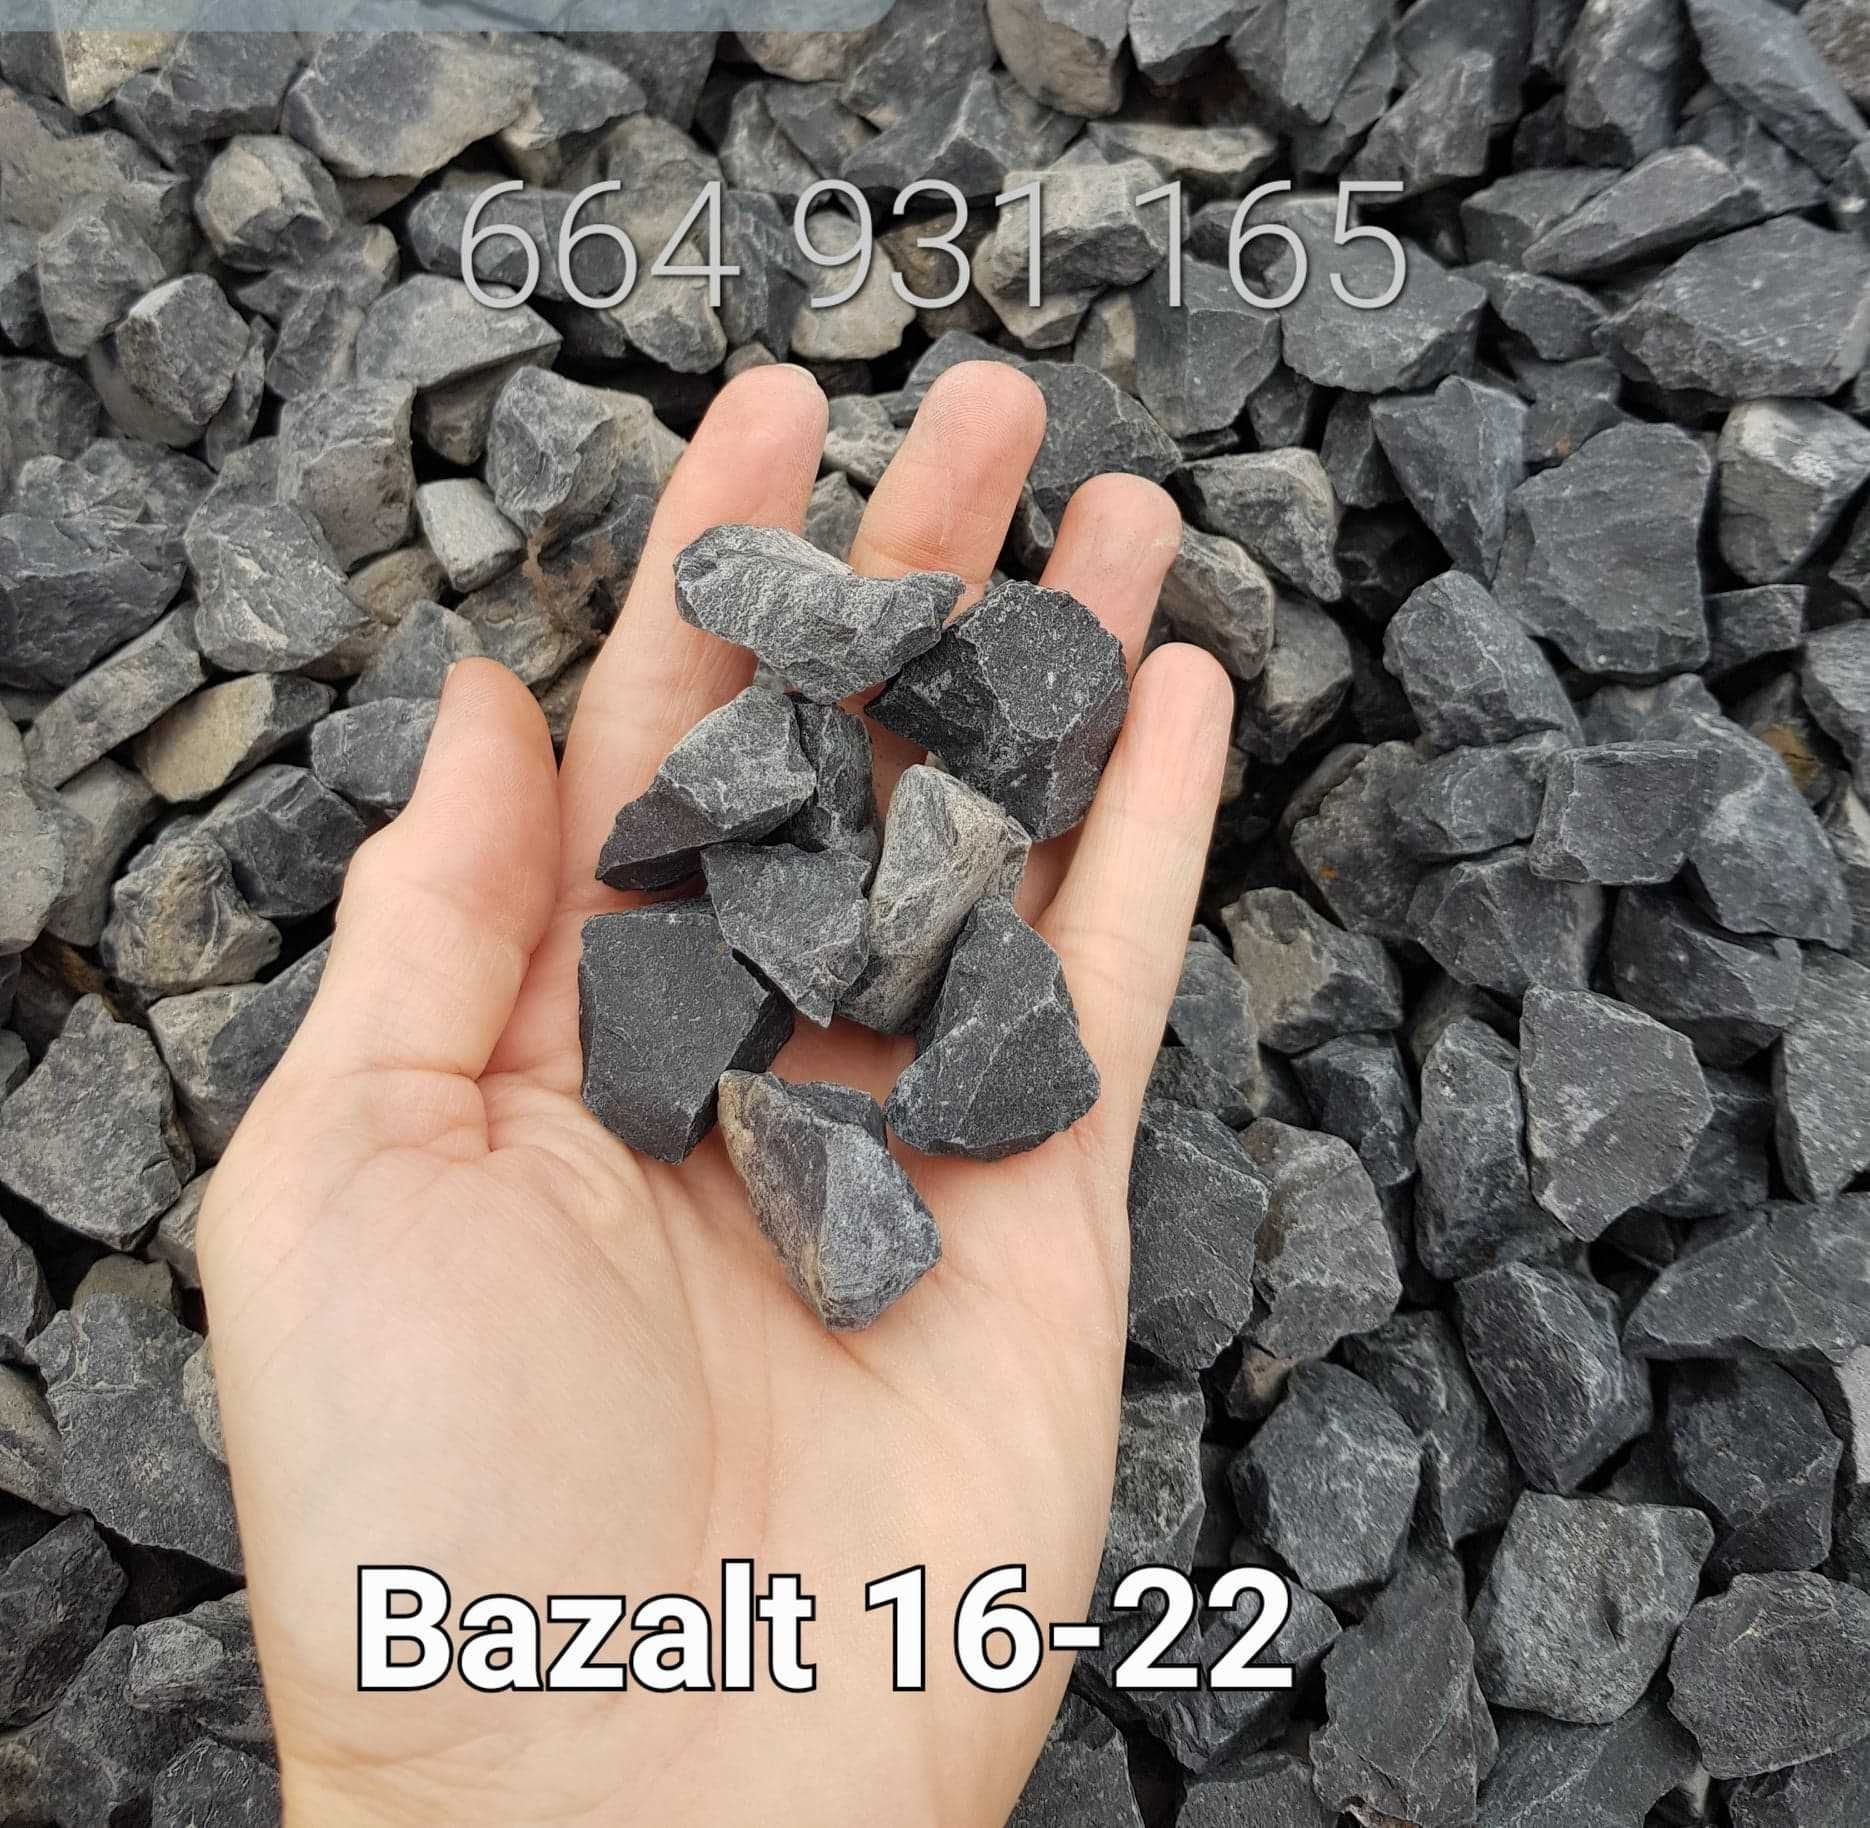 otoczak 8-16 żwir 16-32 płukany granit grys bazalt piasek dolomit